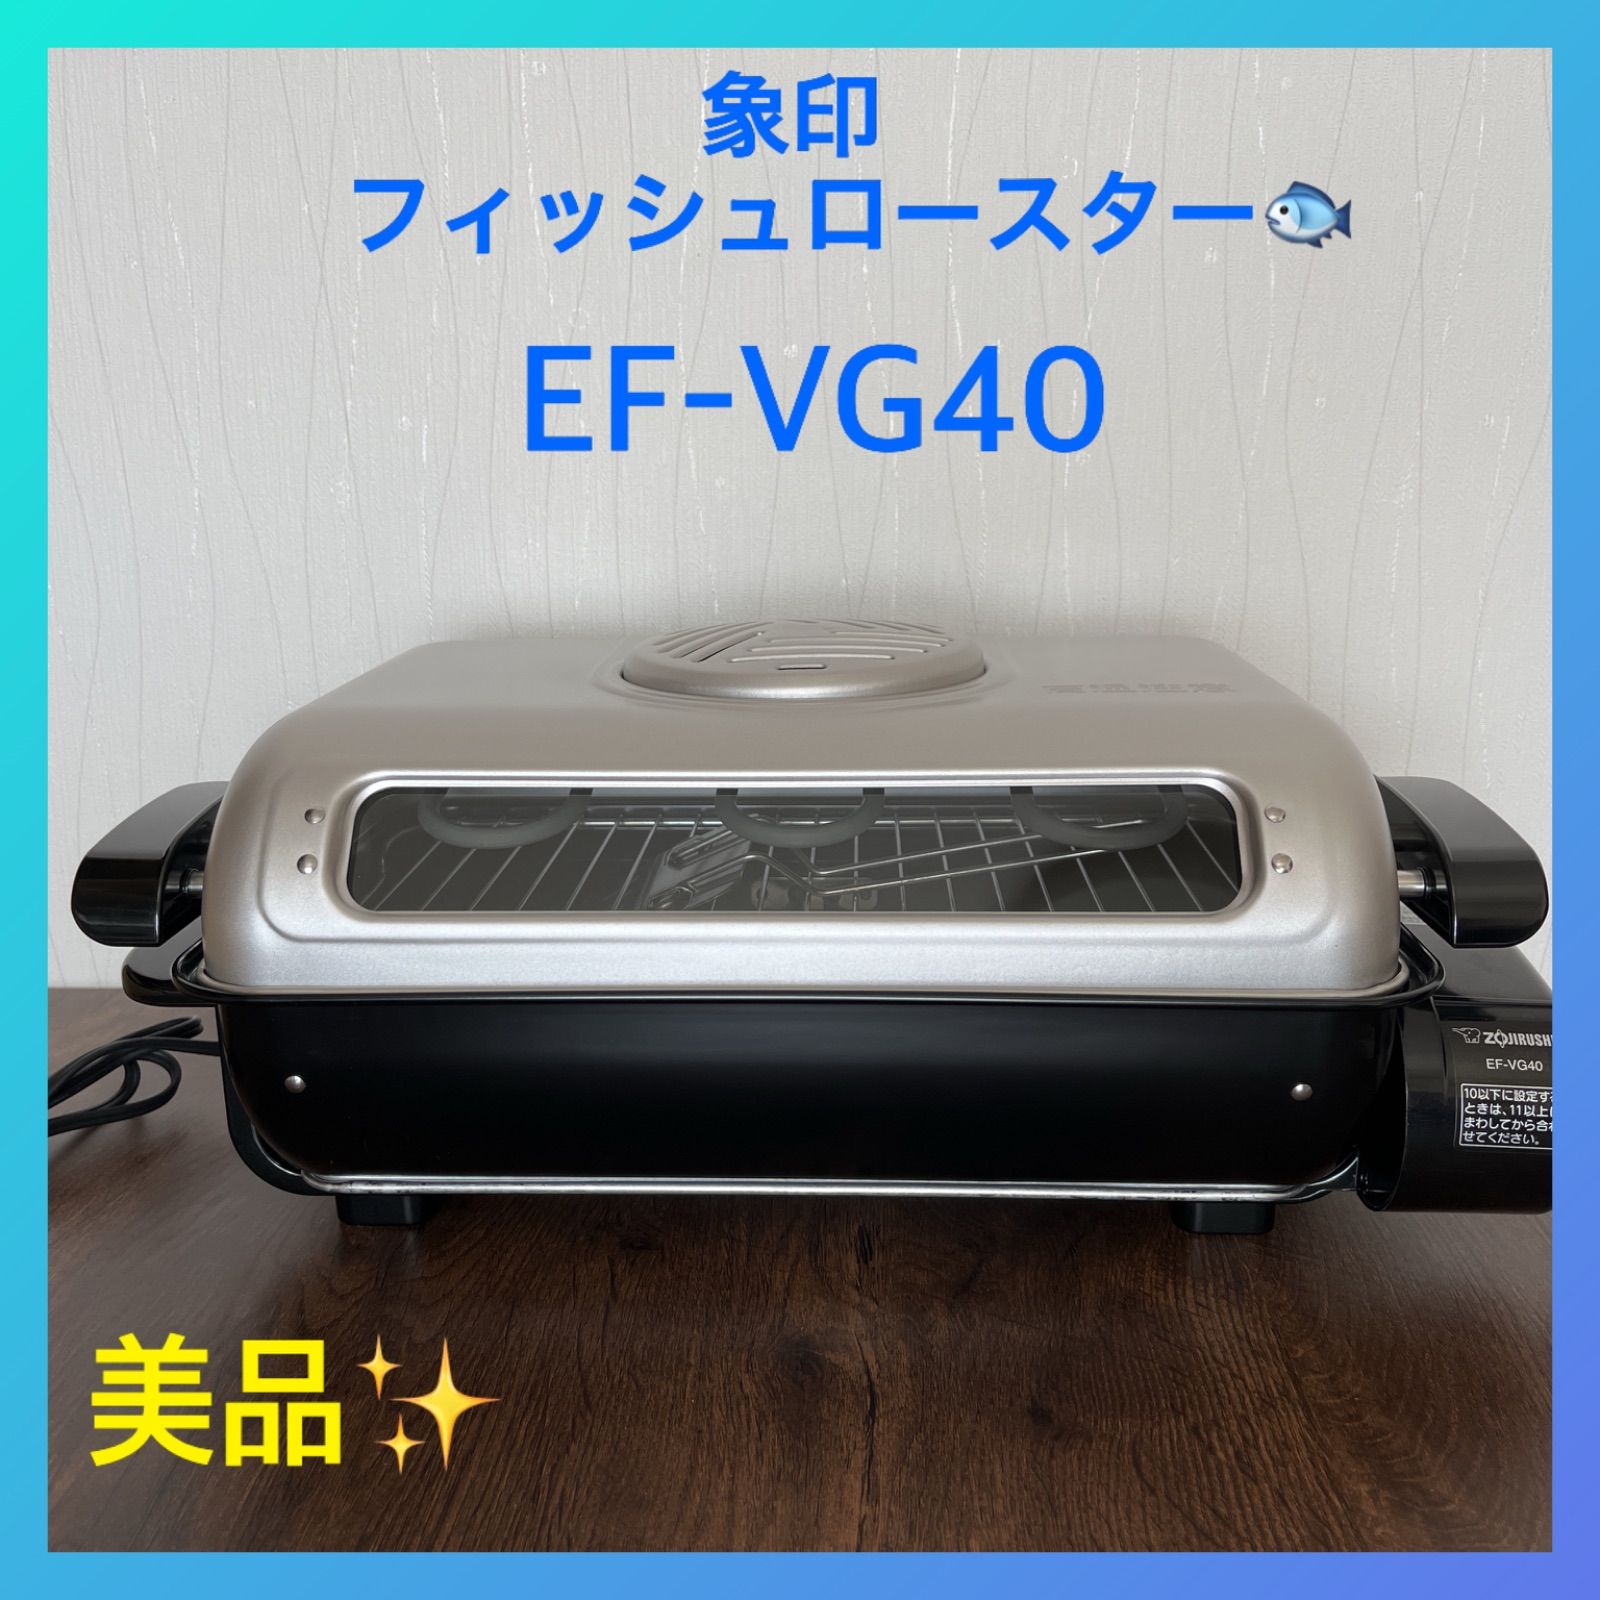 象印(ZOJIRUSHI) EF-VG40-SA フィッシュロースター